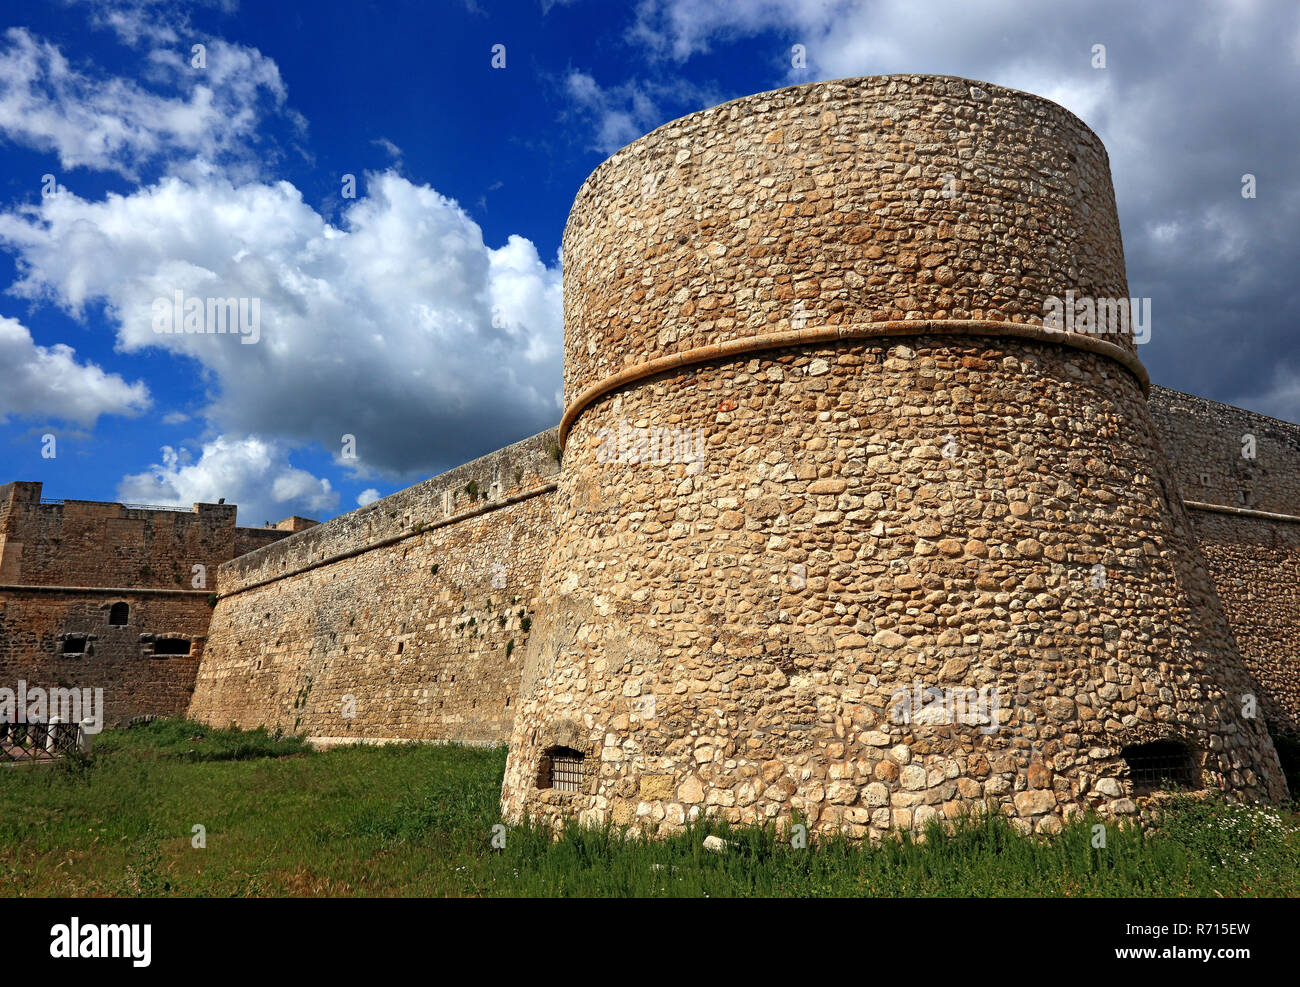 Schloss von Manfredonia, Nationalen Archäologischen Museum, Apulien, Foggia, Italien Stockfoto